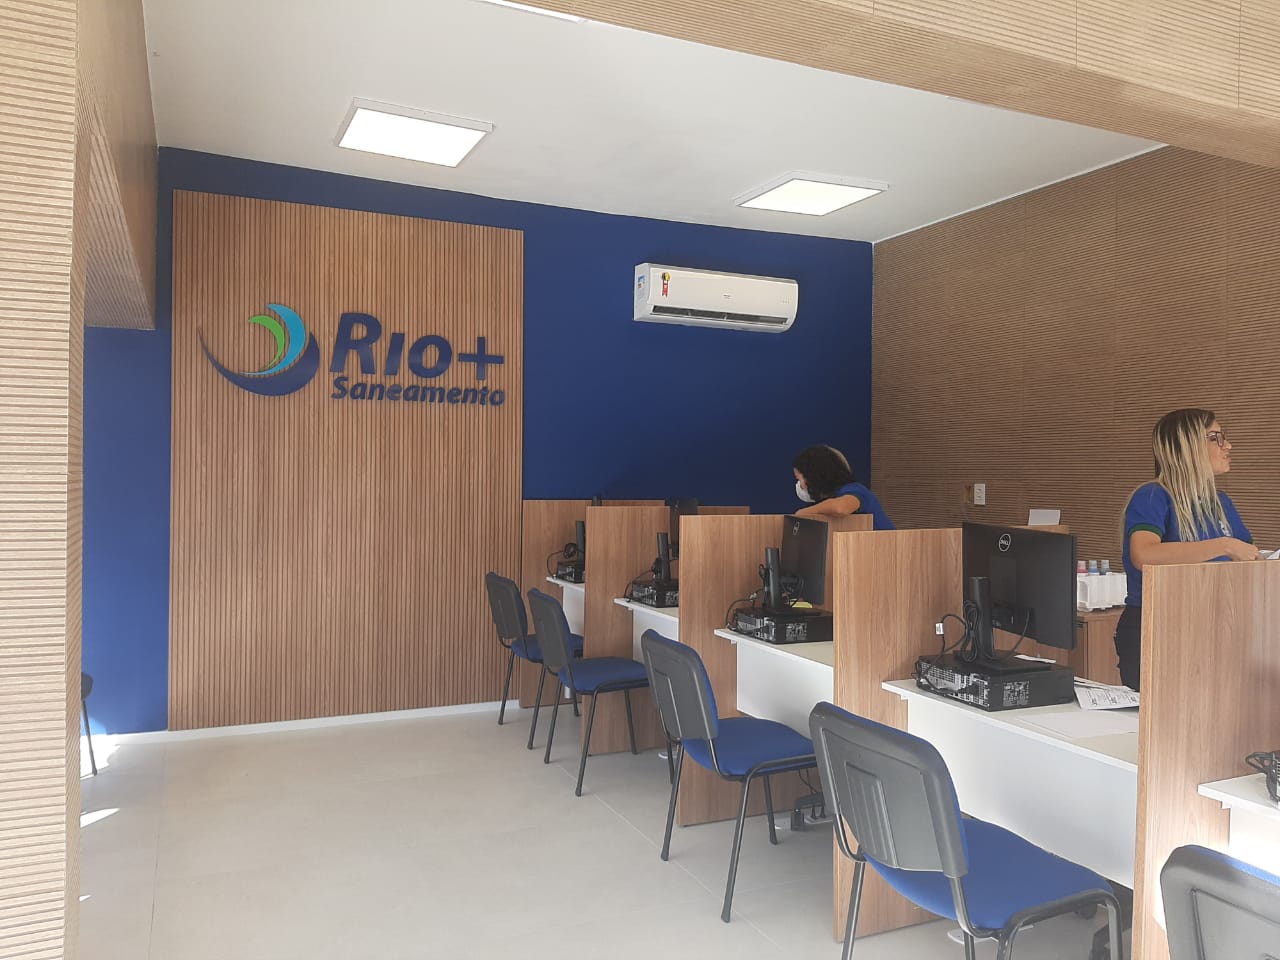 Rio + Saneamento assumiu responsabilidade pelos serviços de abastecimento de água no Município